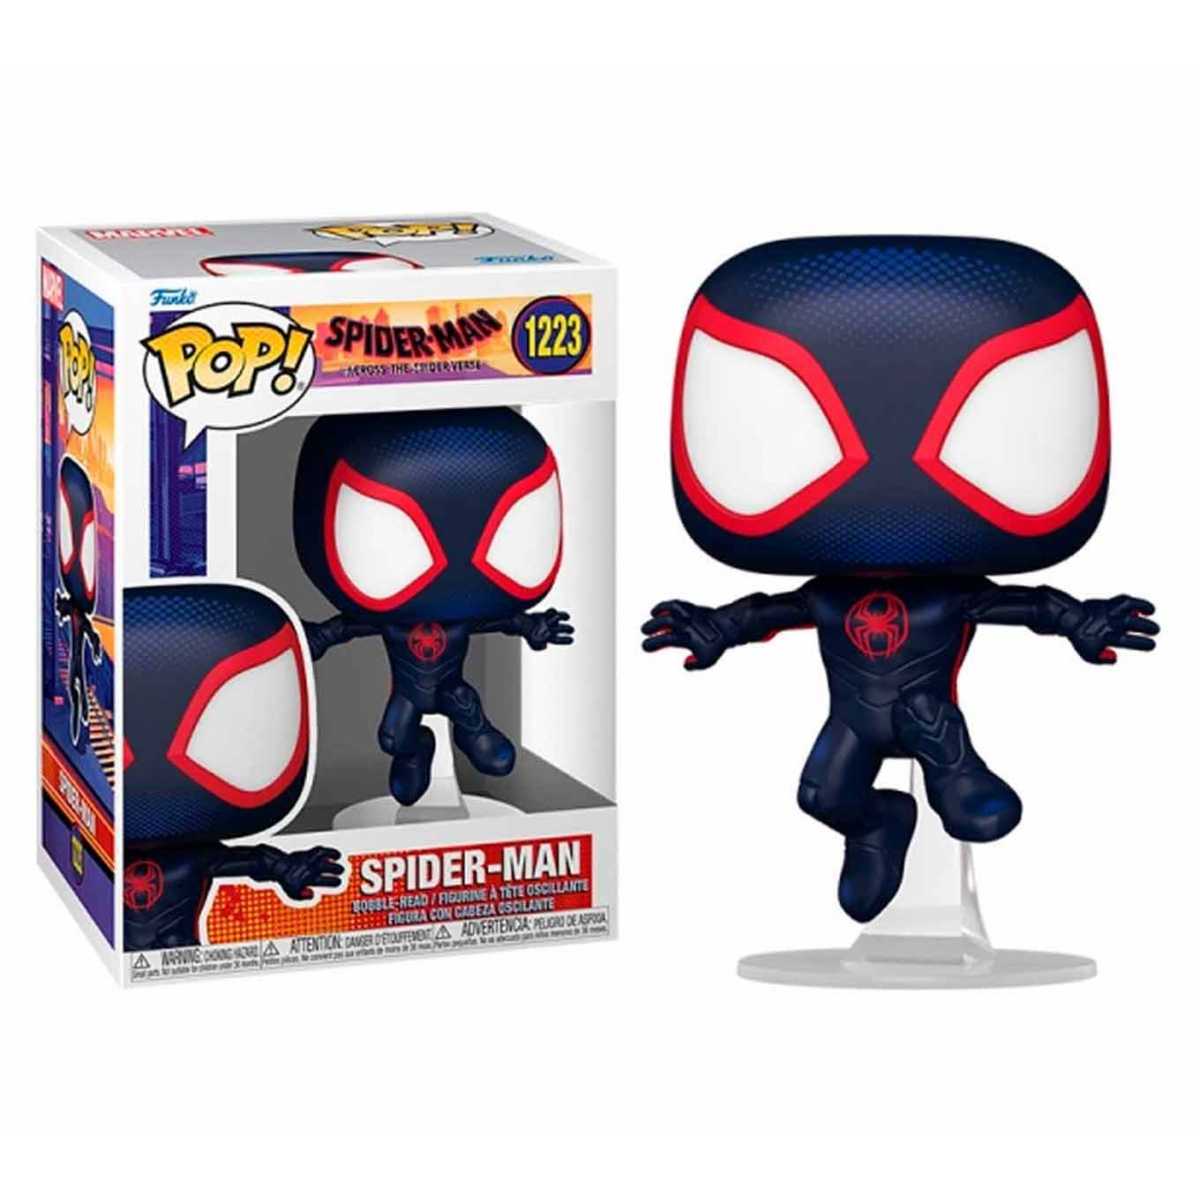 POP! Spider-Man 1223...